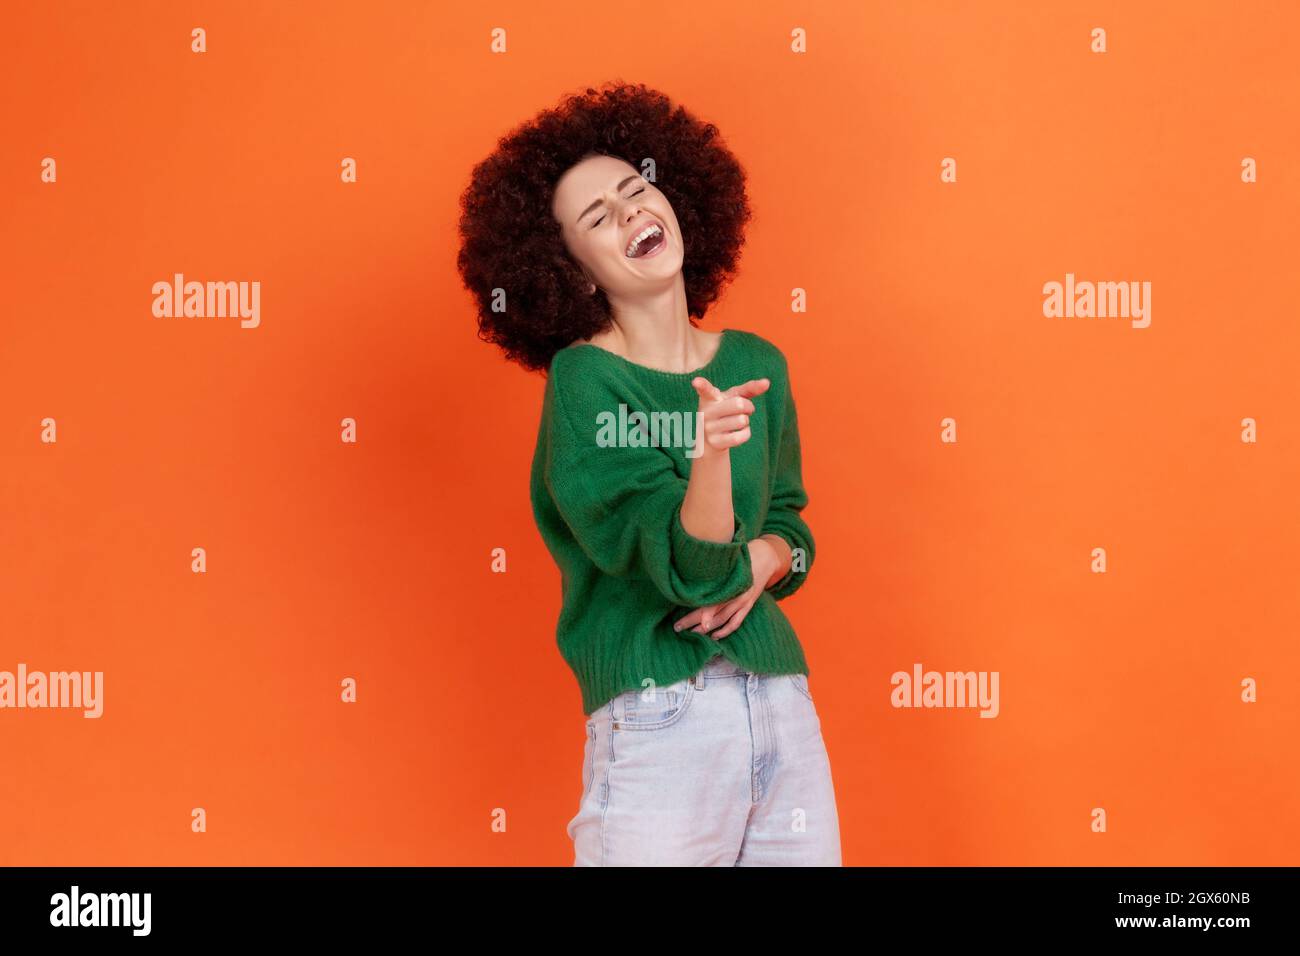 Femme avec une coiffure afro portant un chandail vert tenant la main sur l'estomac et en riant à voix haute, pointant le doigt vers l'appareil photo, indiquant idiot ridicule. Studio d'intérieur isolé sur fond orange. Banque D'Images